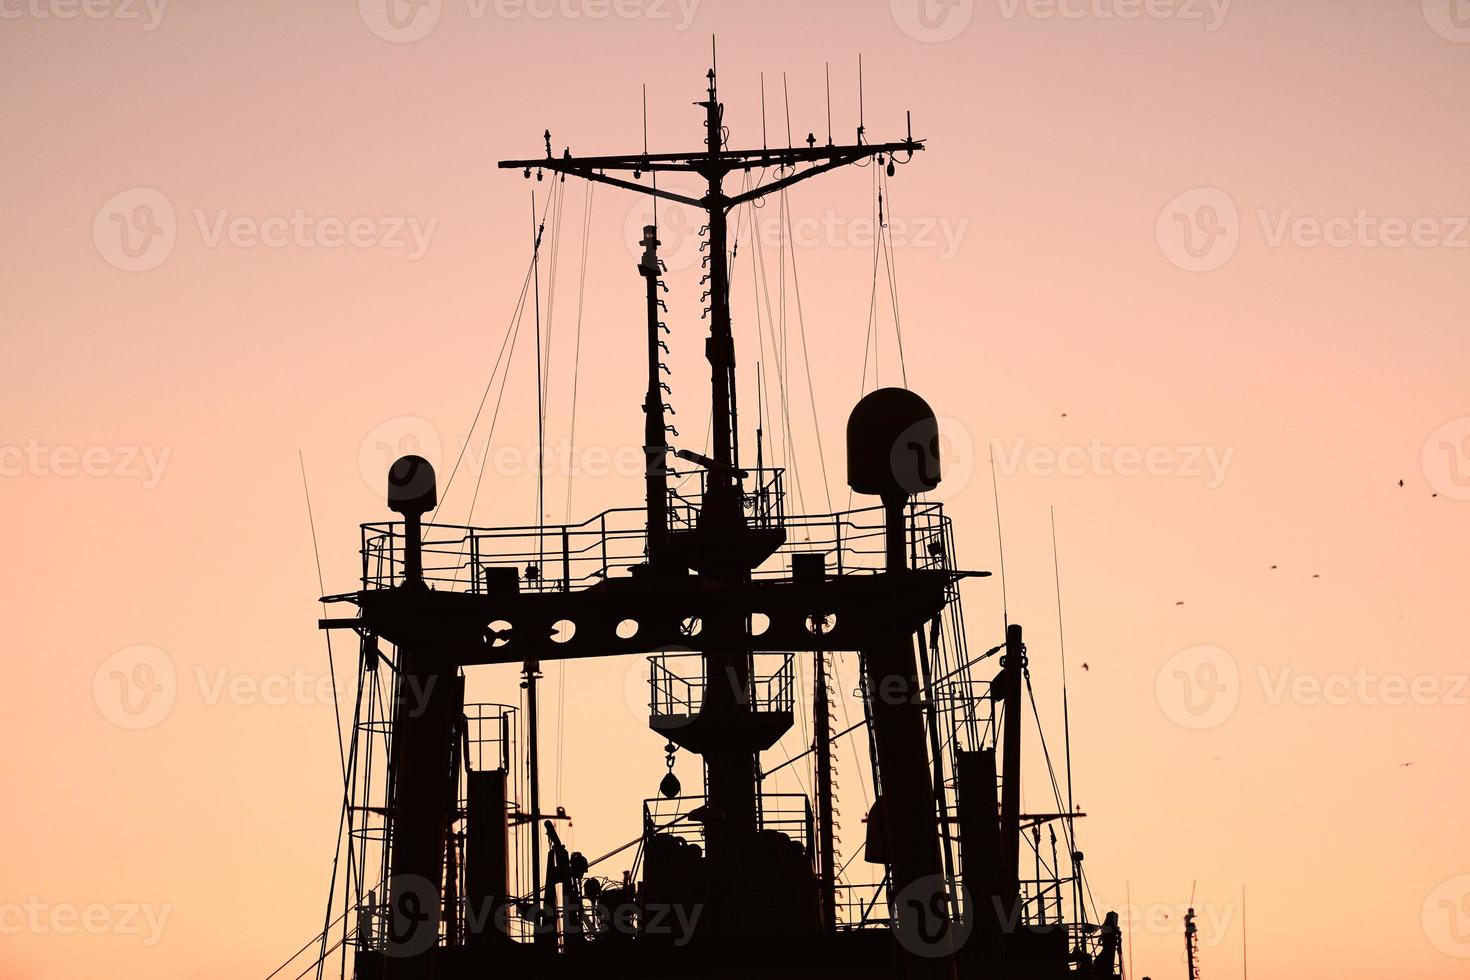 siluetas de barcos y grúas de contenedores en el puerto marítimo foto